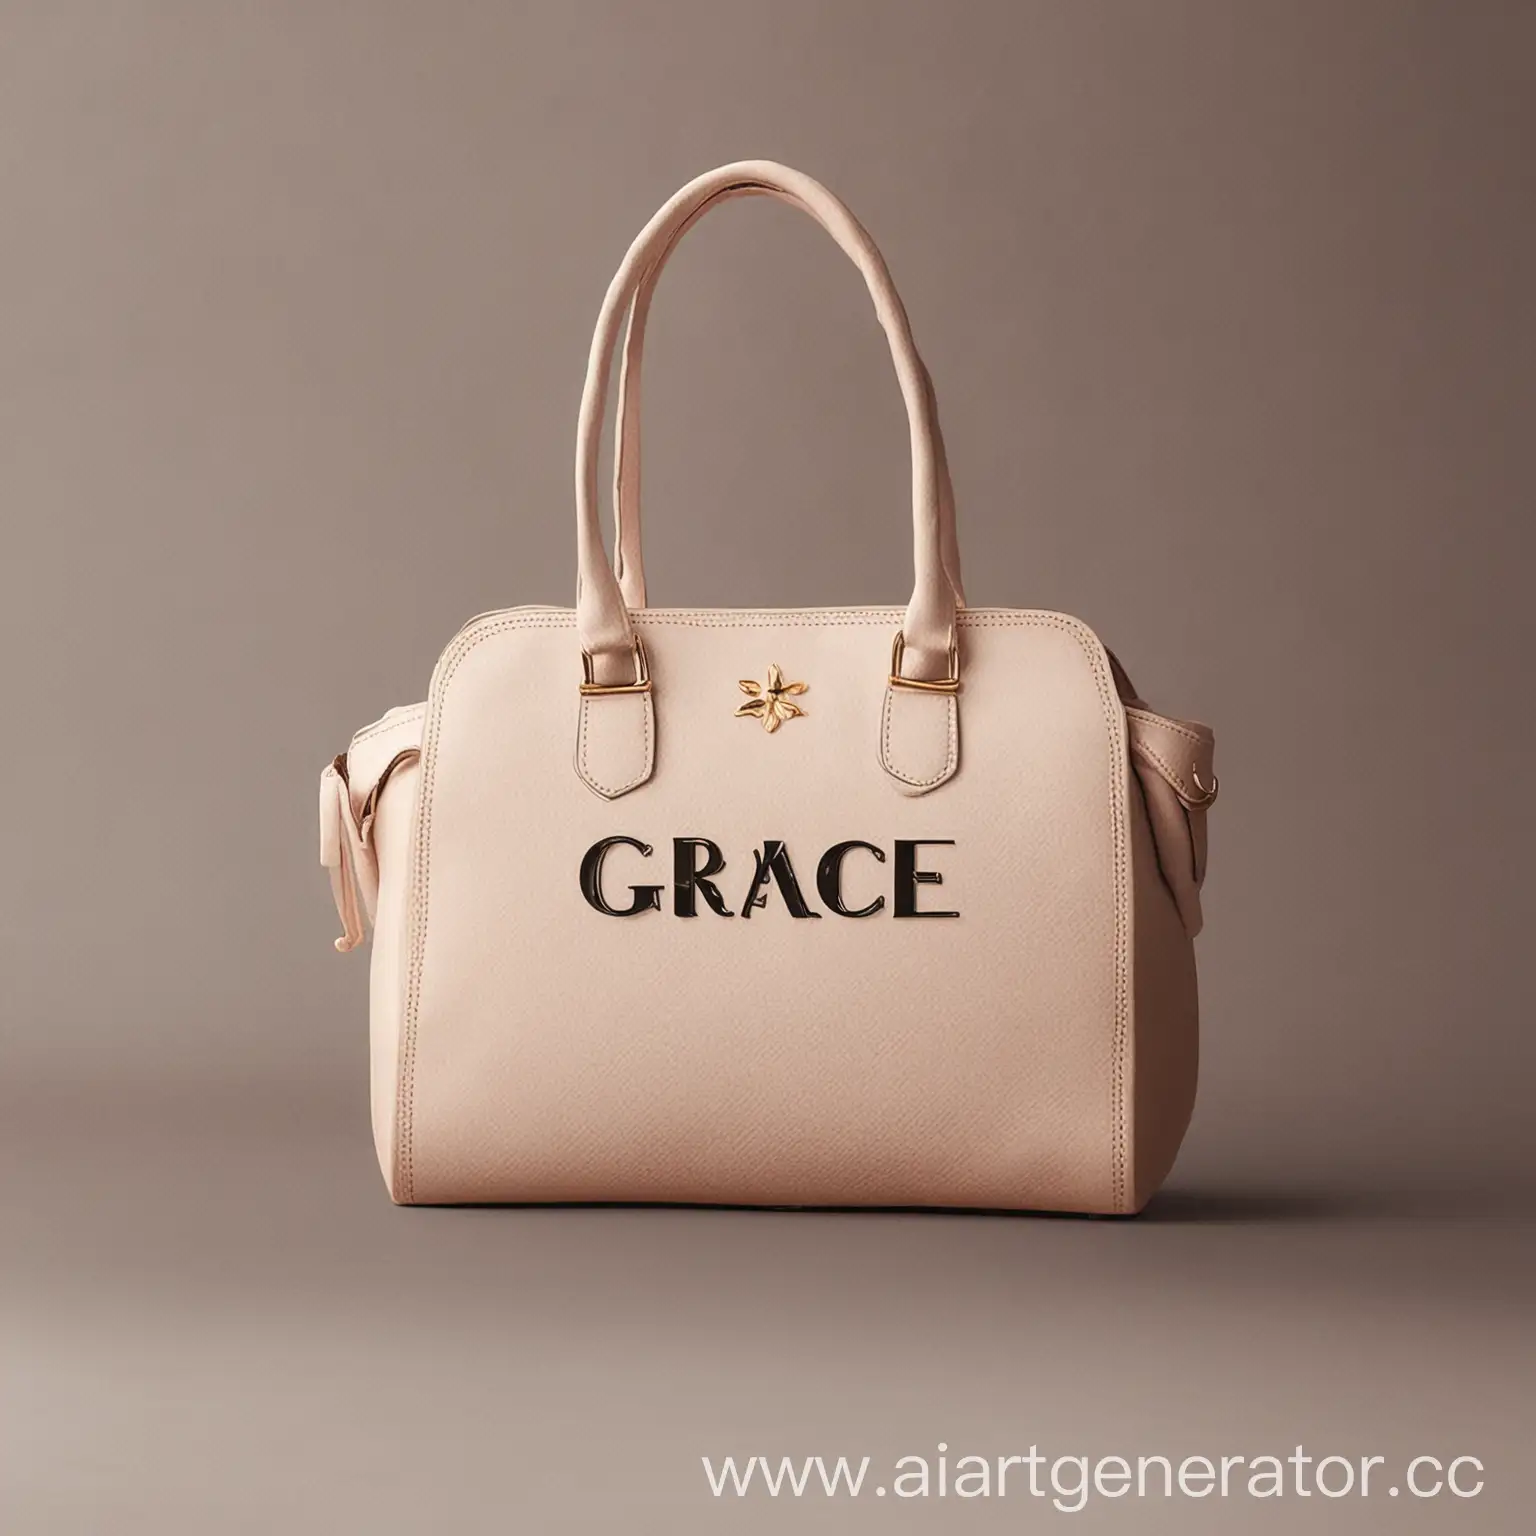 Logo for the women's handbag store "Grace"